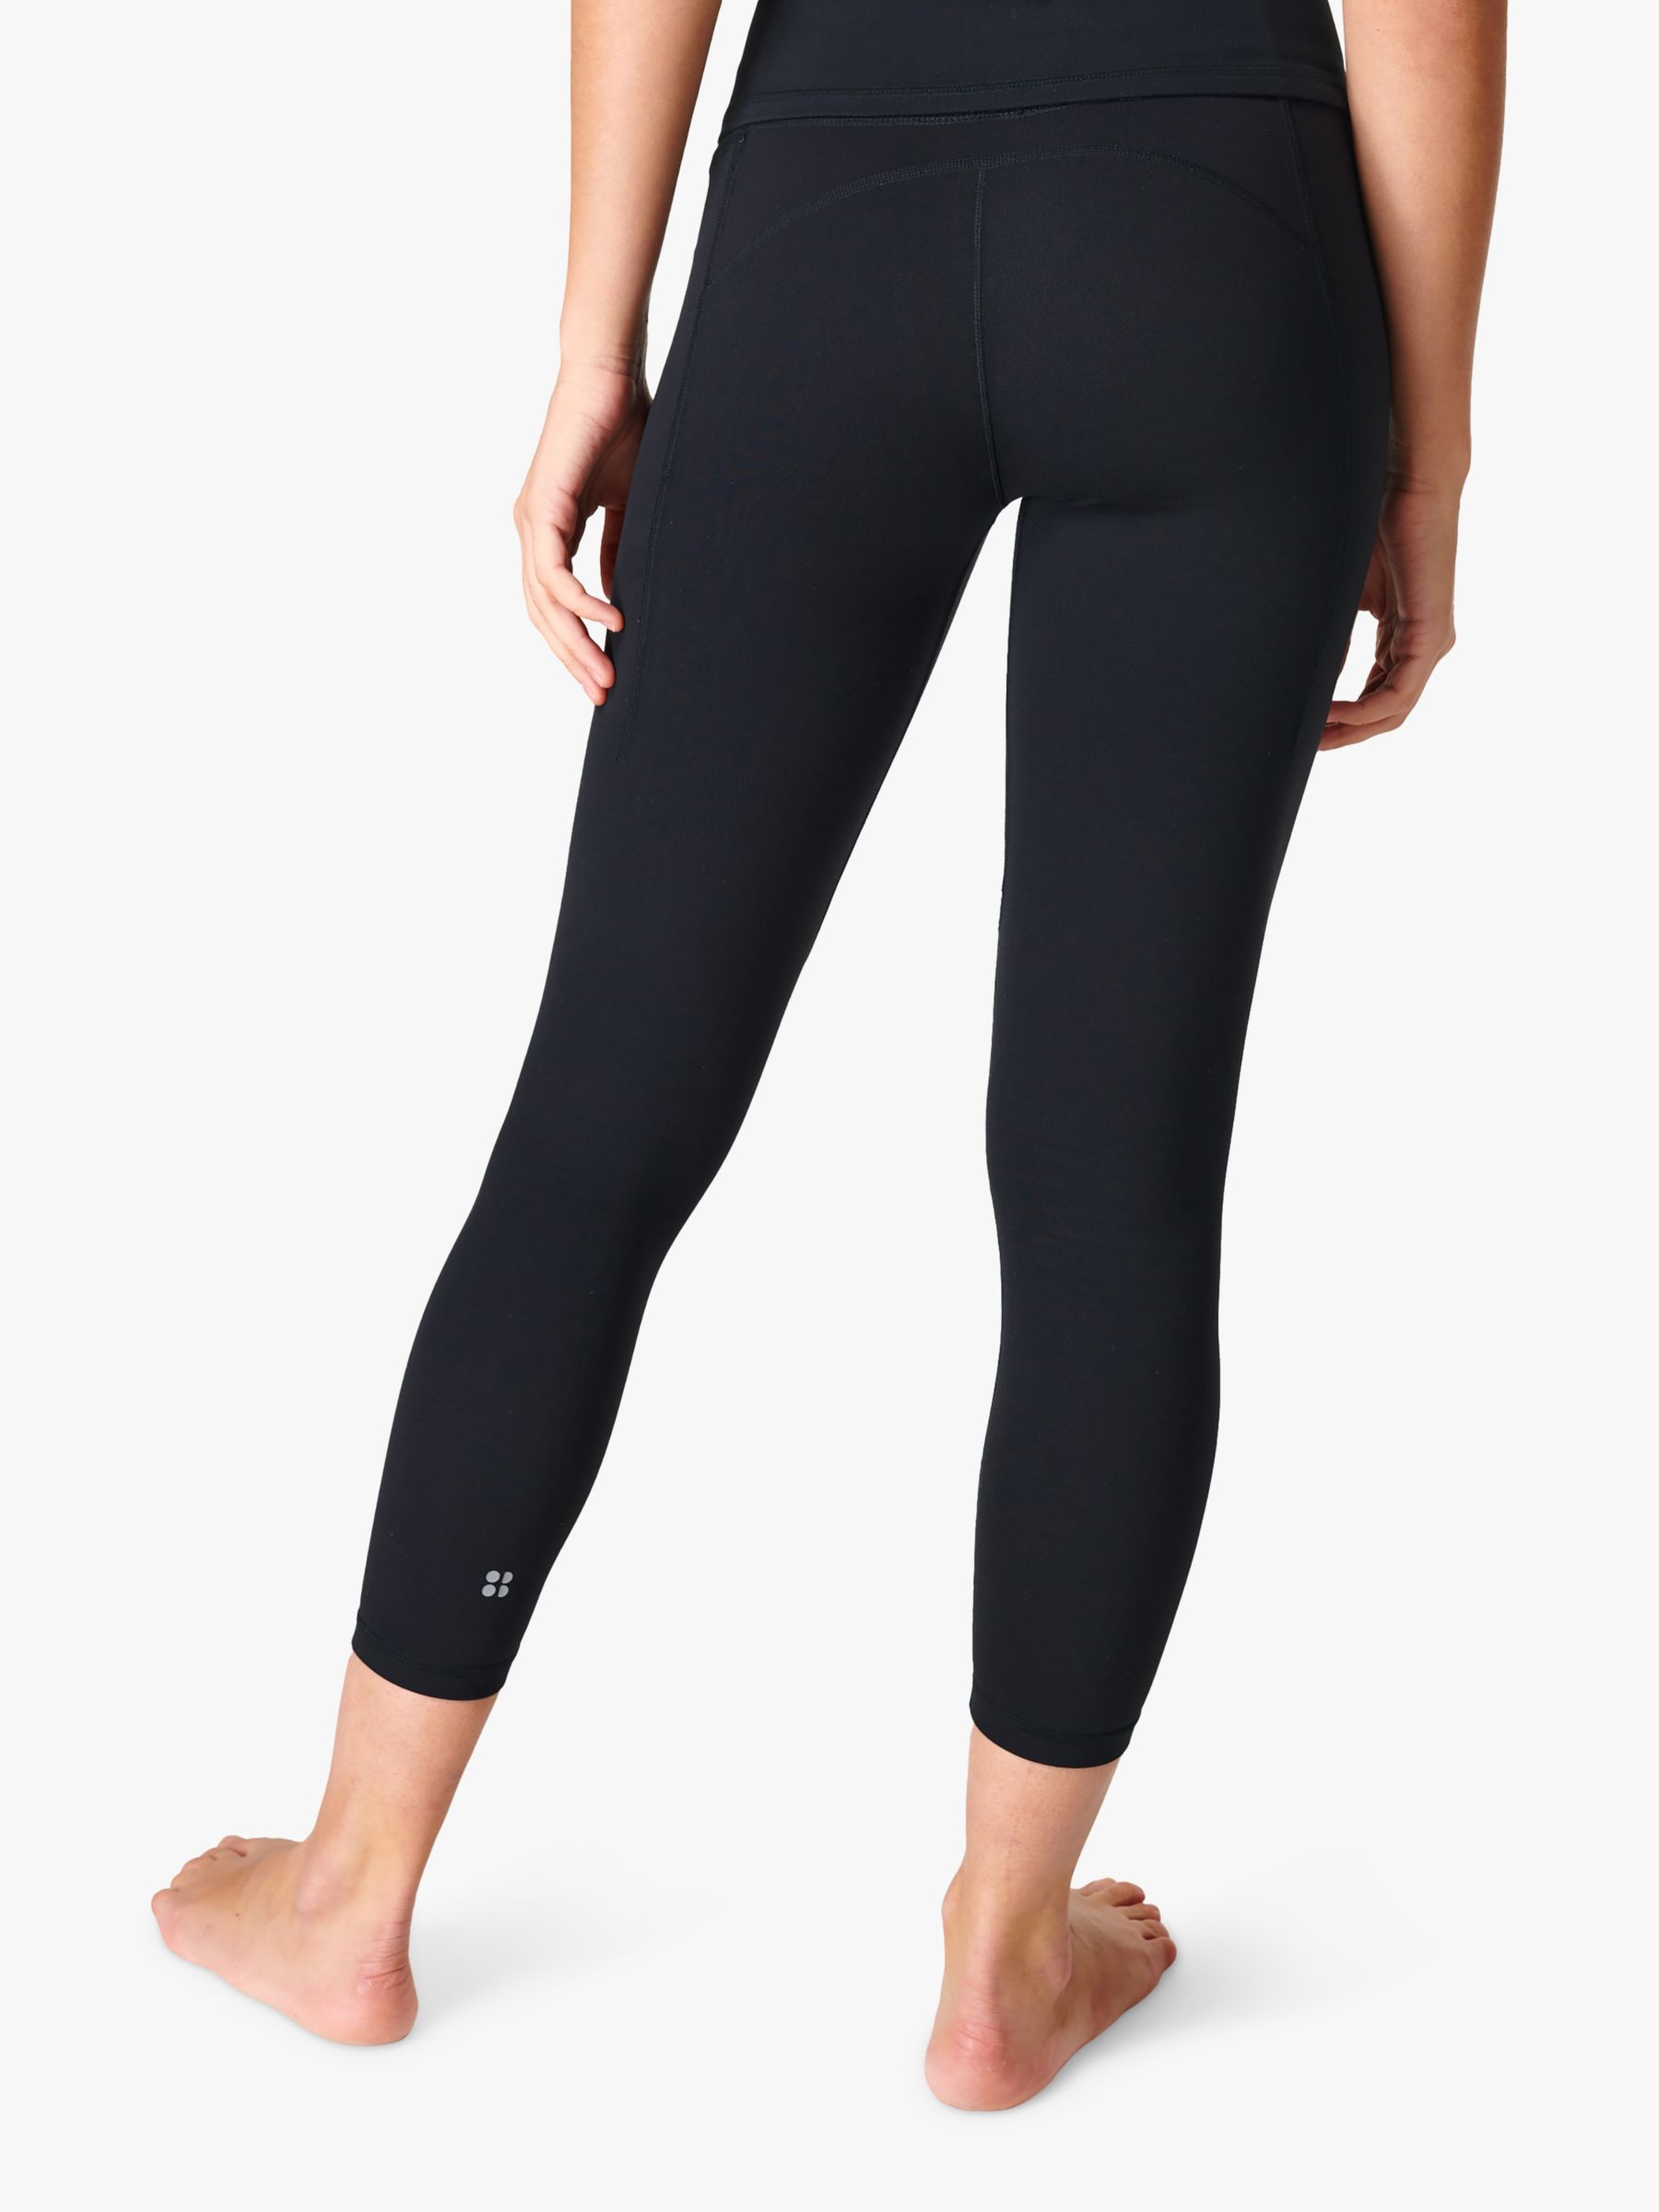 Super Soft 7/8 Yoga Leggings - Black, Women's Leggings